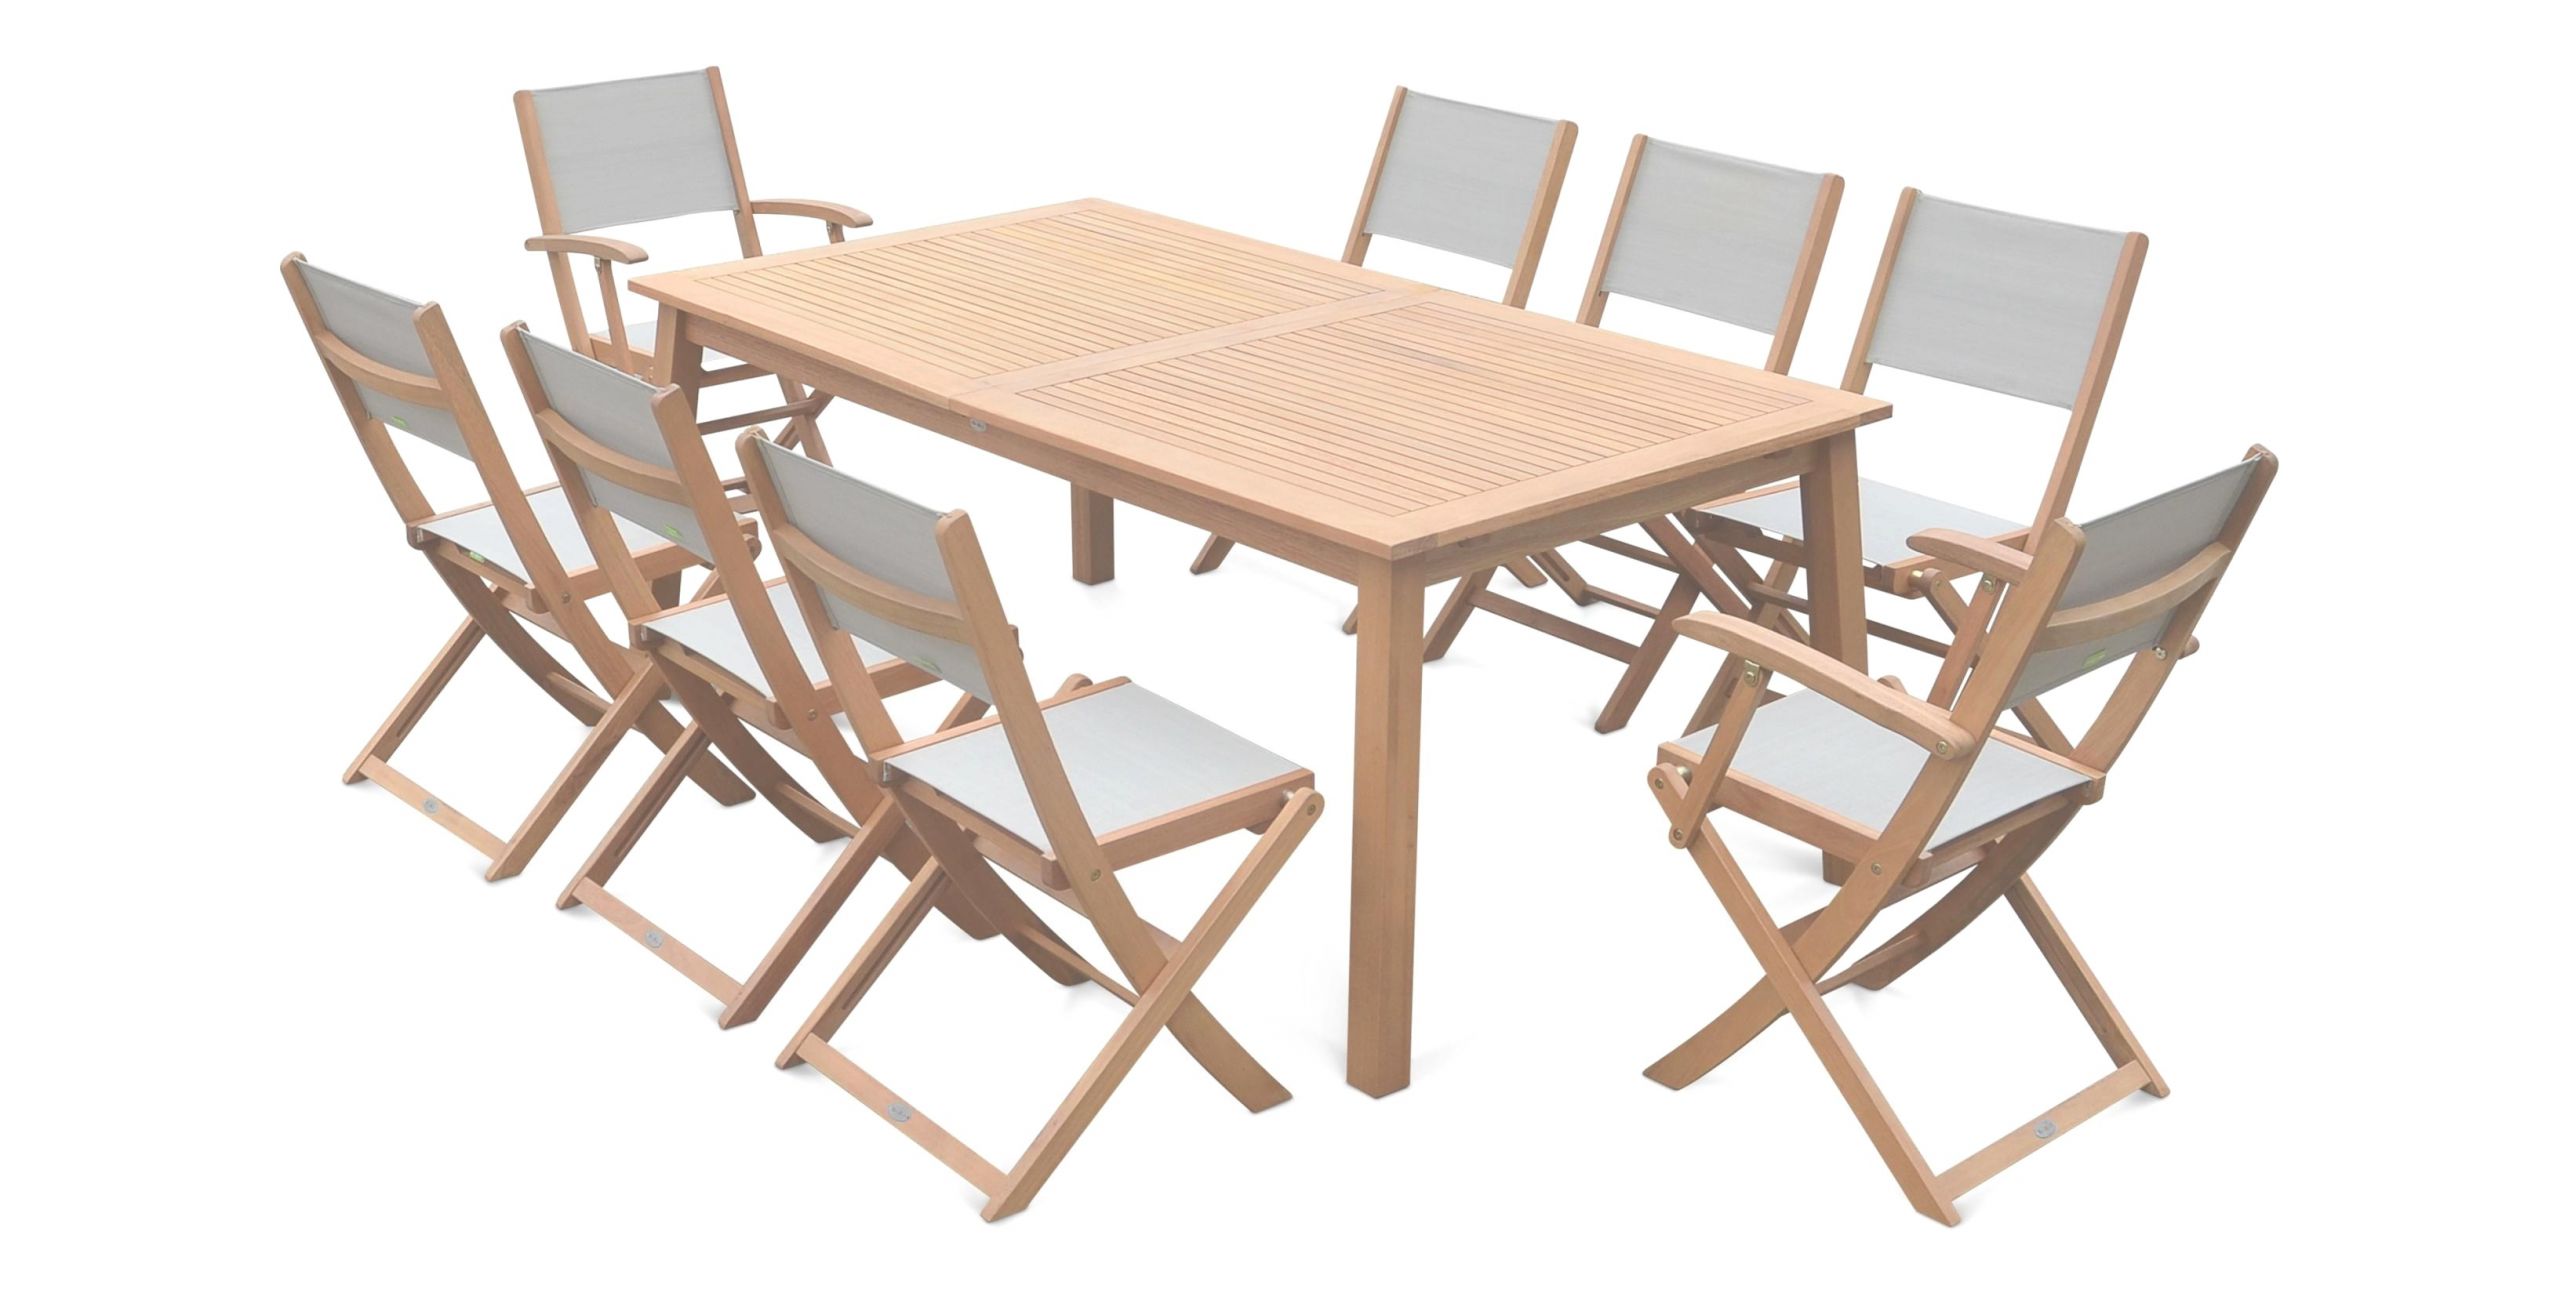 table picnic bois brico depot plans de pliante exterieur elegant pour for avec lames posite lame terrasse lameo 25a145 idees et